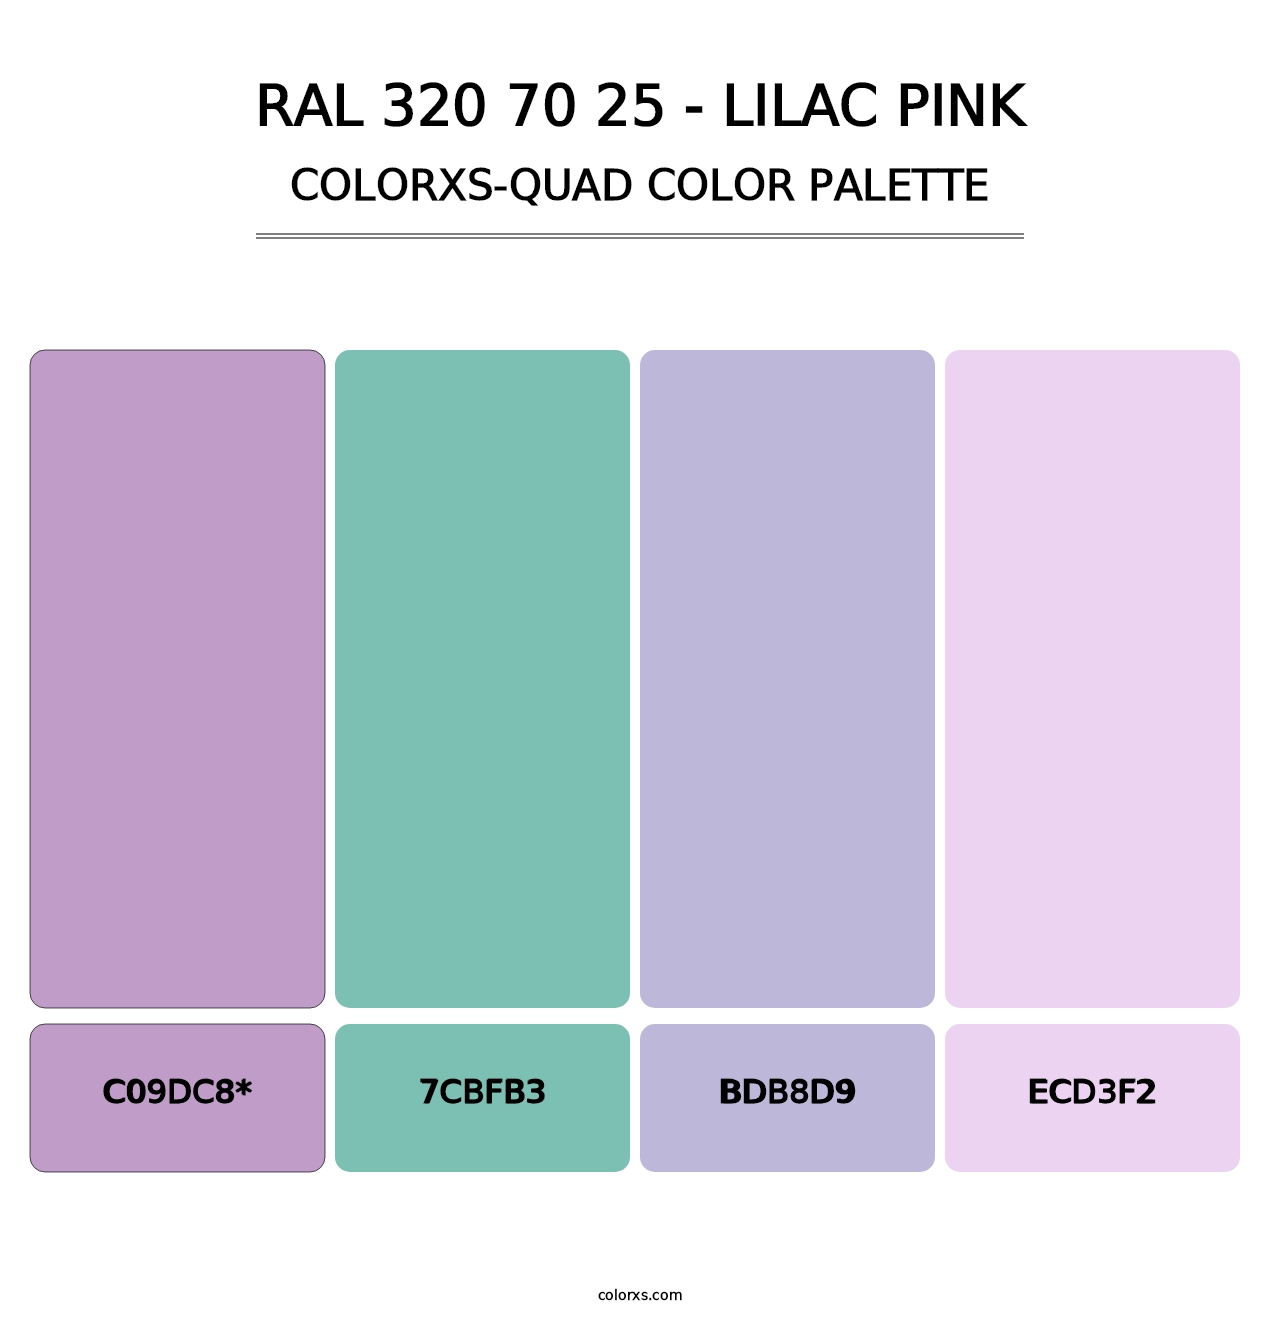 RAL 320 70 25 - Lilac Pink - Colorxs Quad Palette